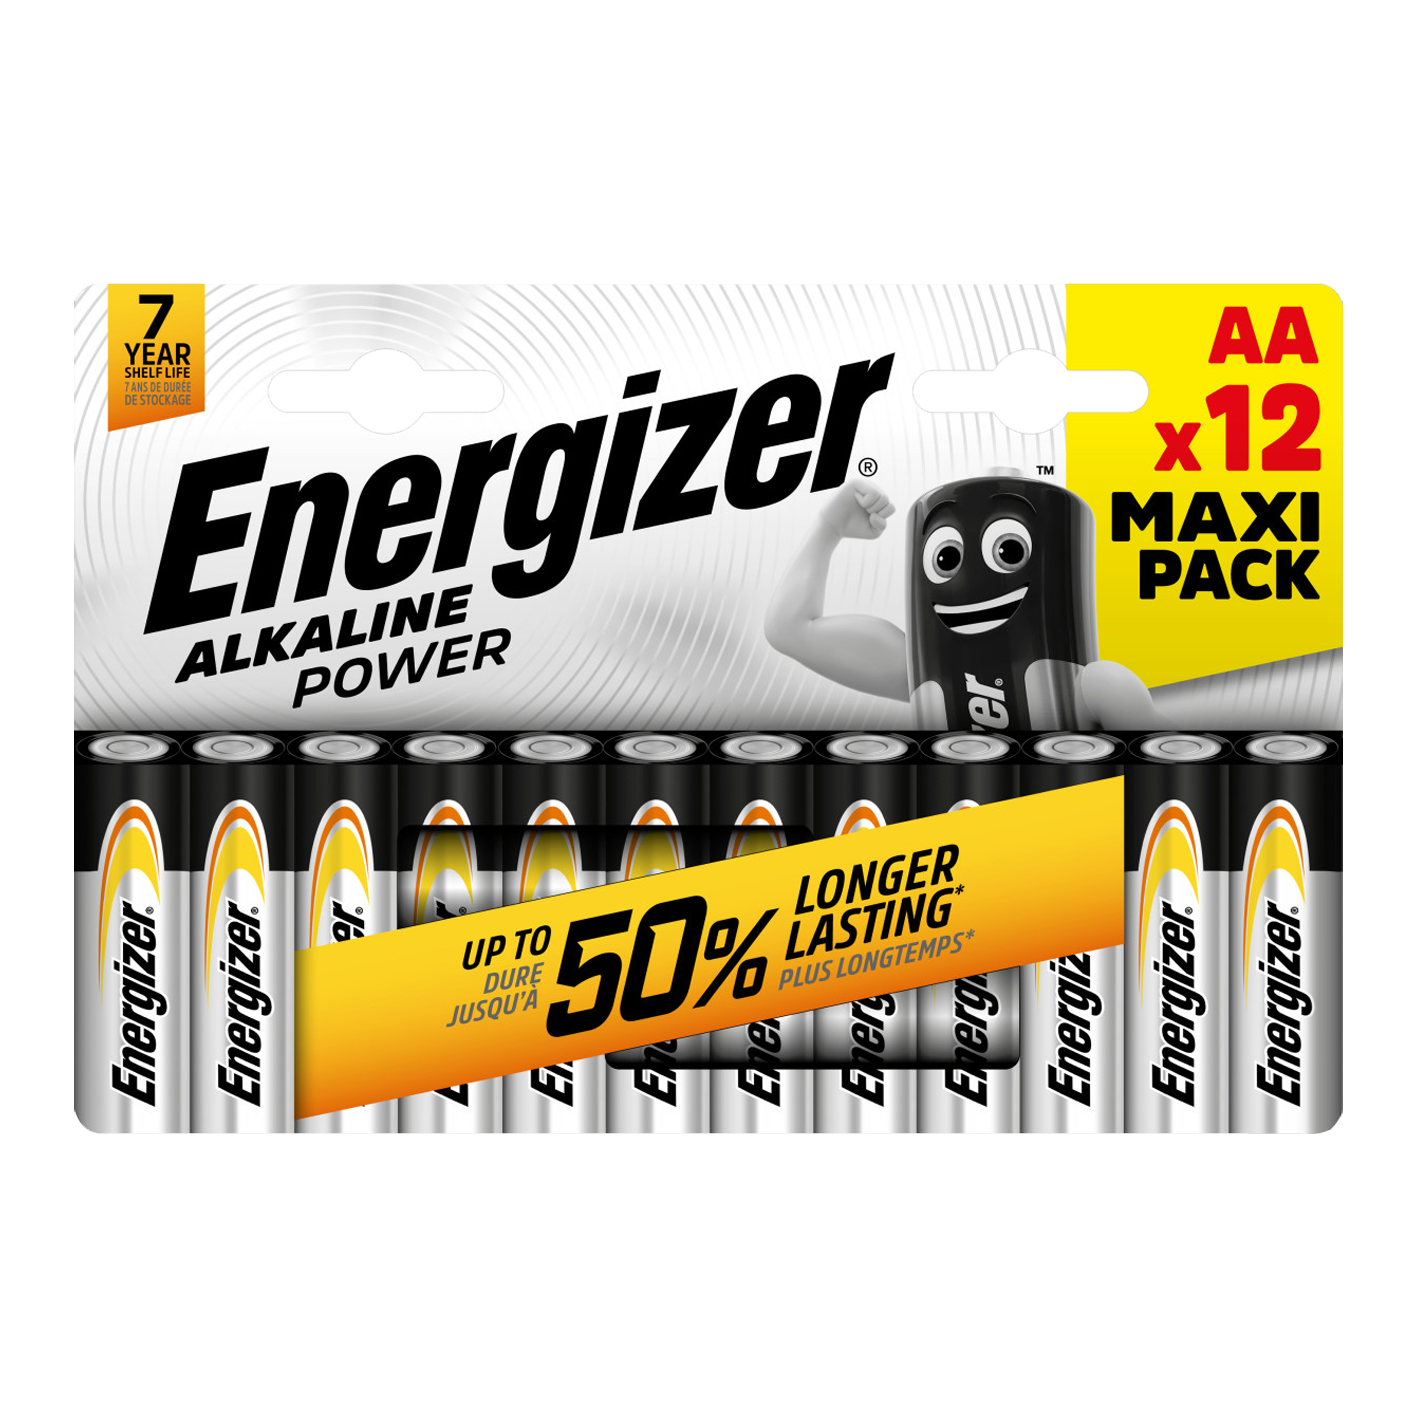 Energizer AA alcalino Power, paquete de 12